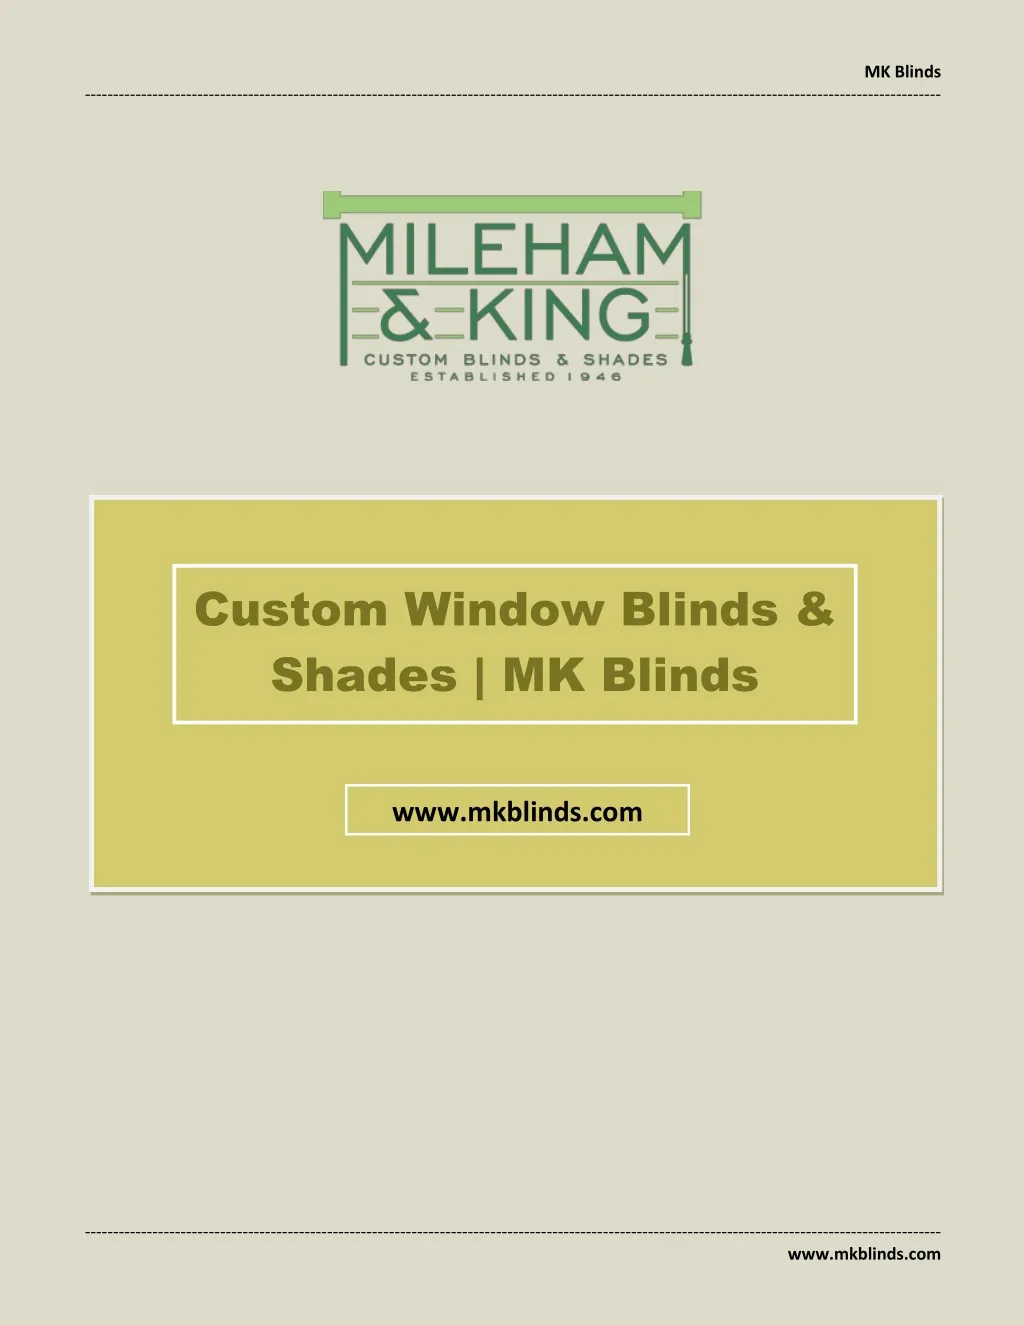 mk blinds